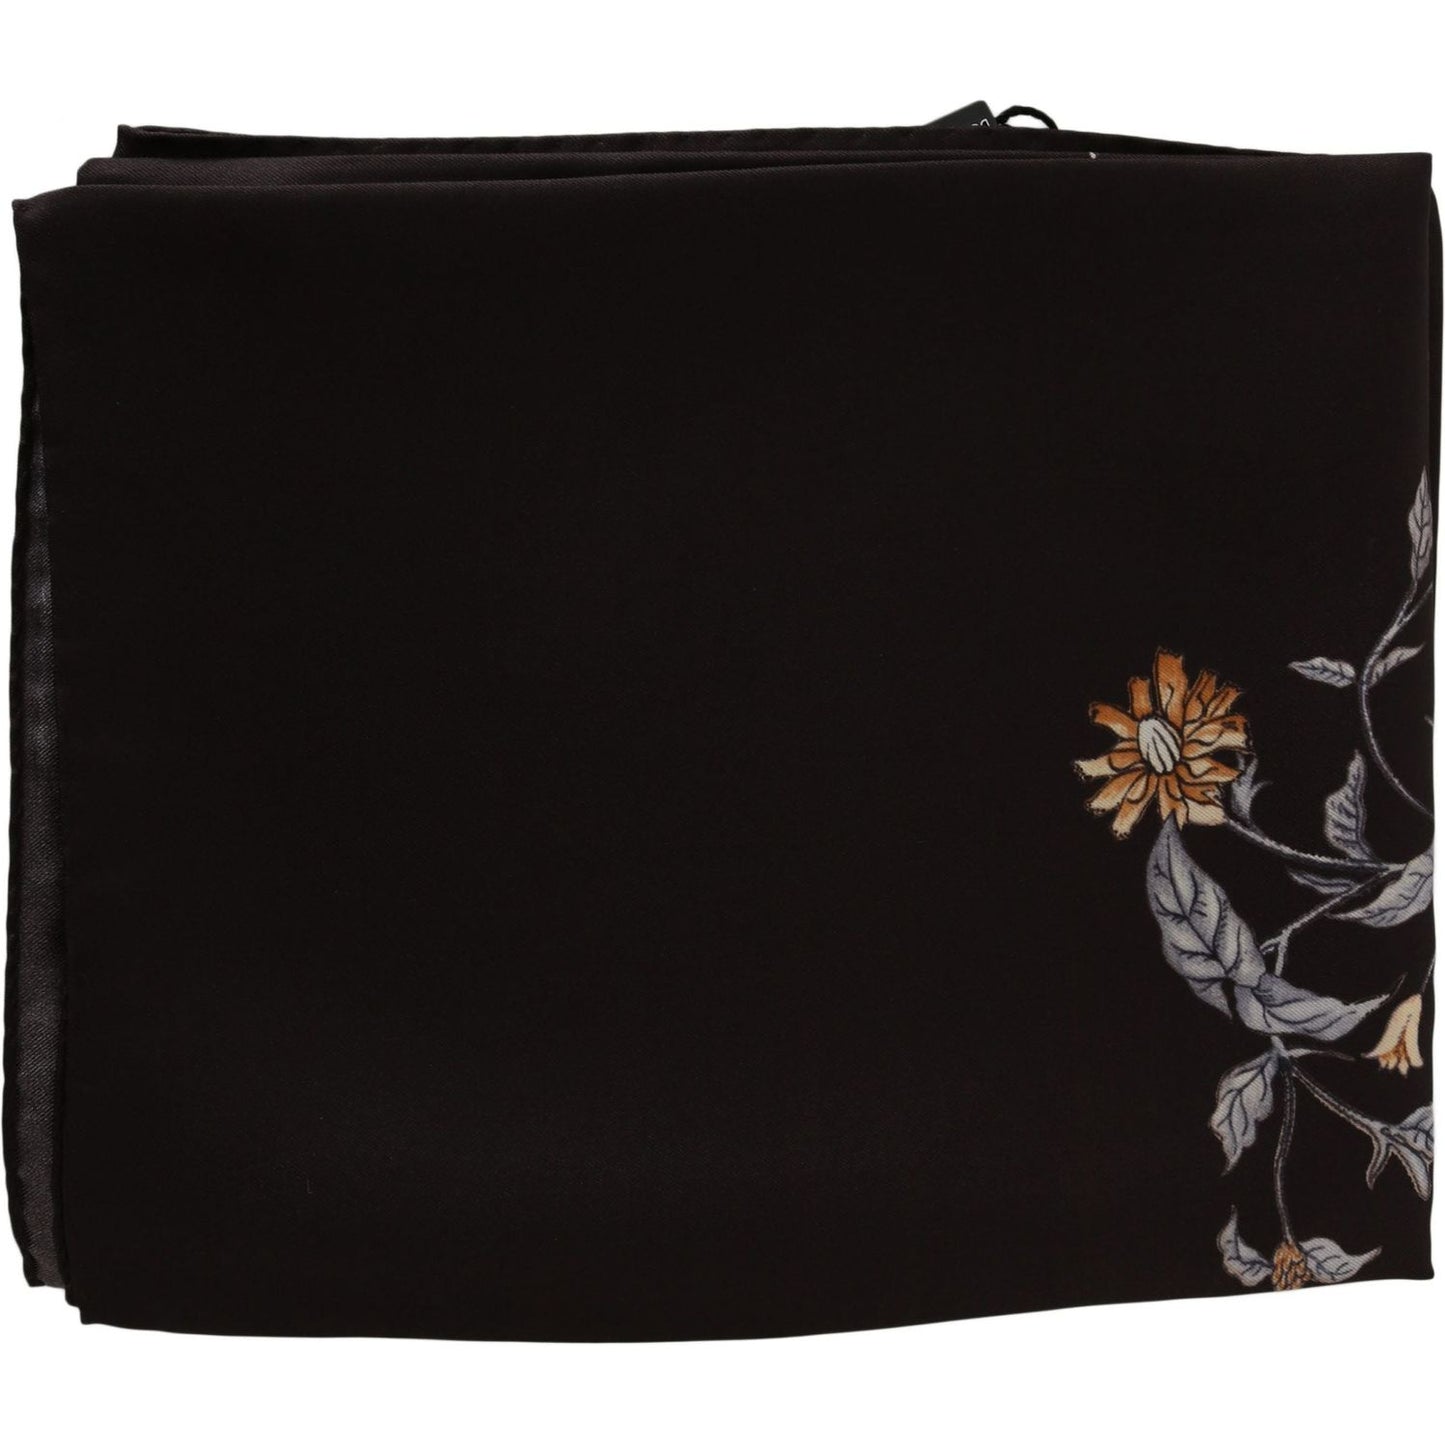 Dolce & Gabbana Elegant Silk Scarf Wrap in Luxe Brown brown-100-silk-bird-print-wrap-80cm-x-95cm-rrp-scarf Silk Wrap Shawls IMG_3733-scaled-b1a487b8-b10.jpg